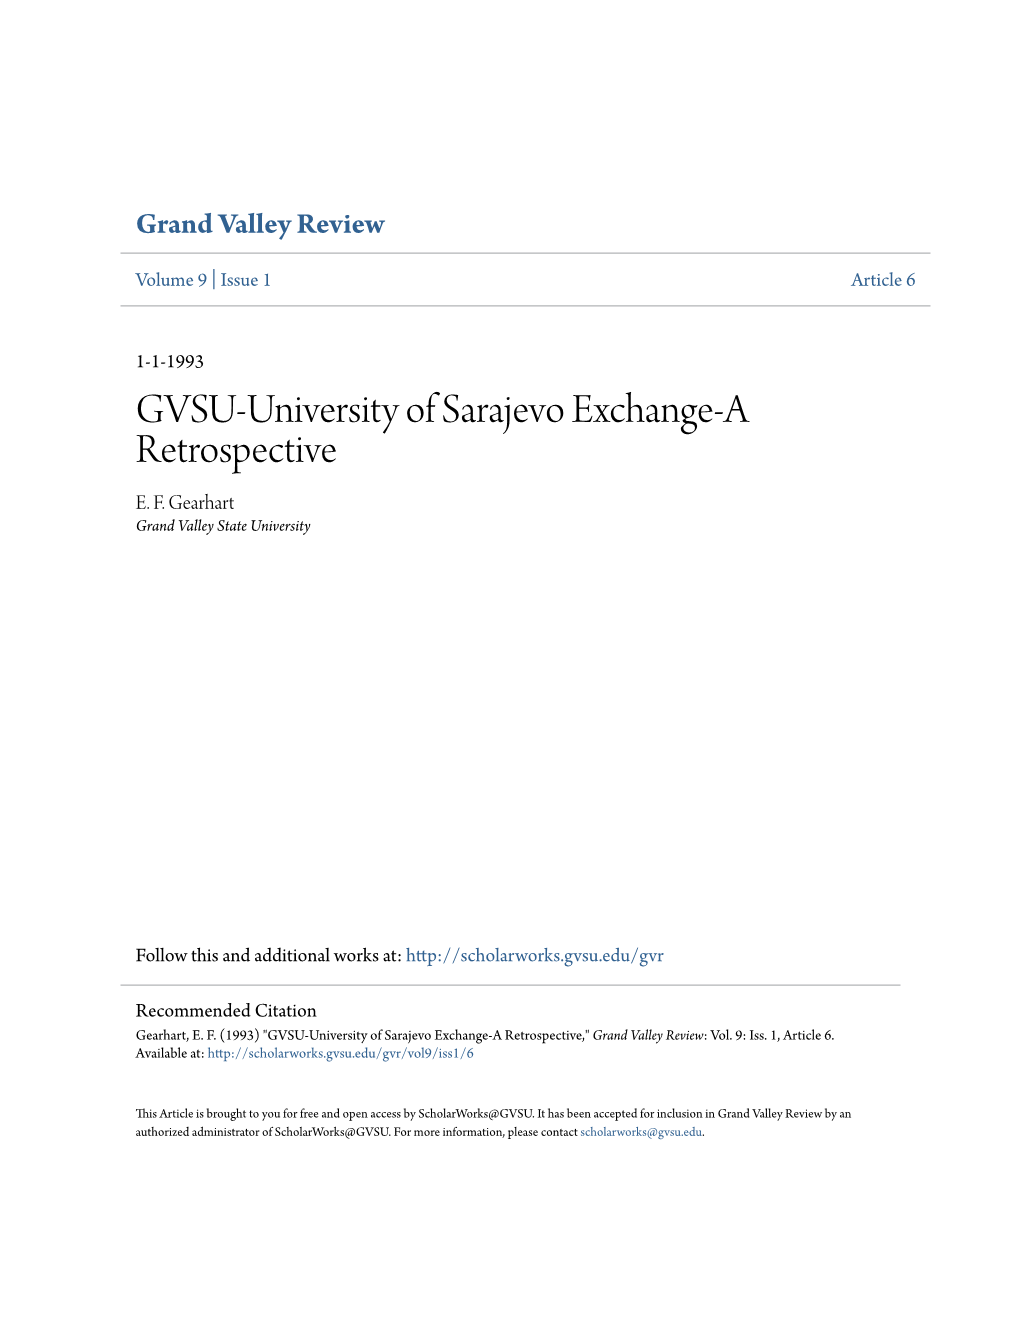 GVSU-University of Sarajevo Exchange-A Retrospective E